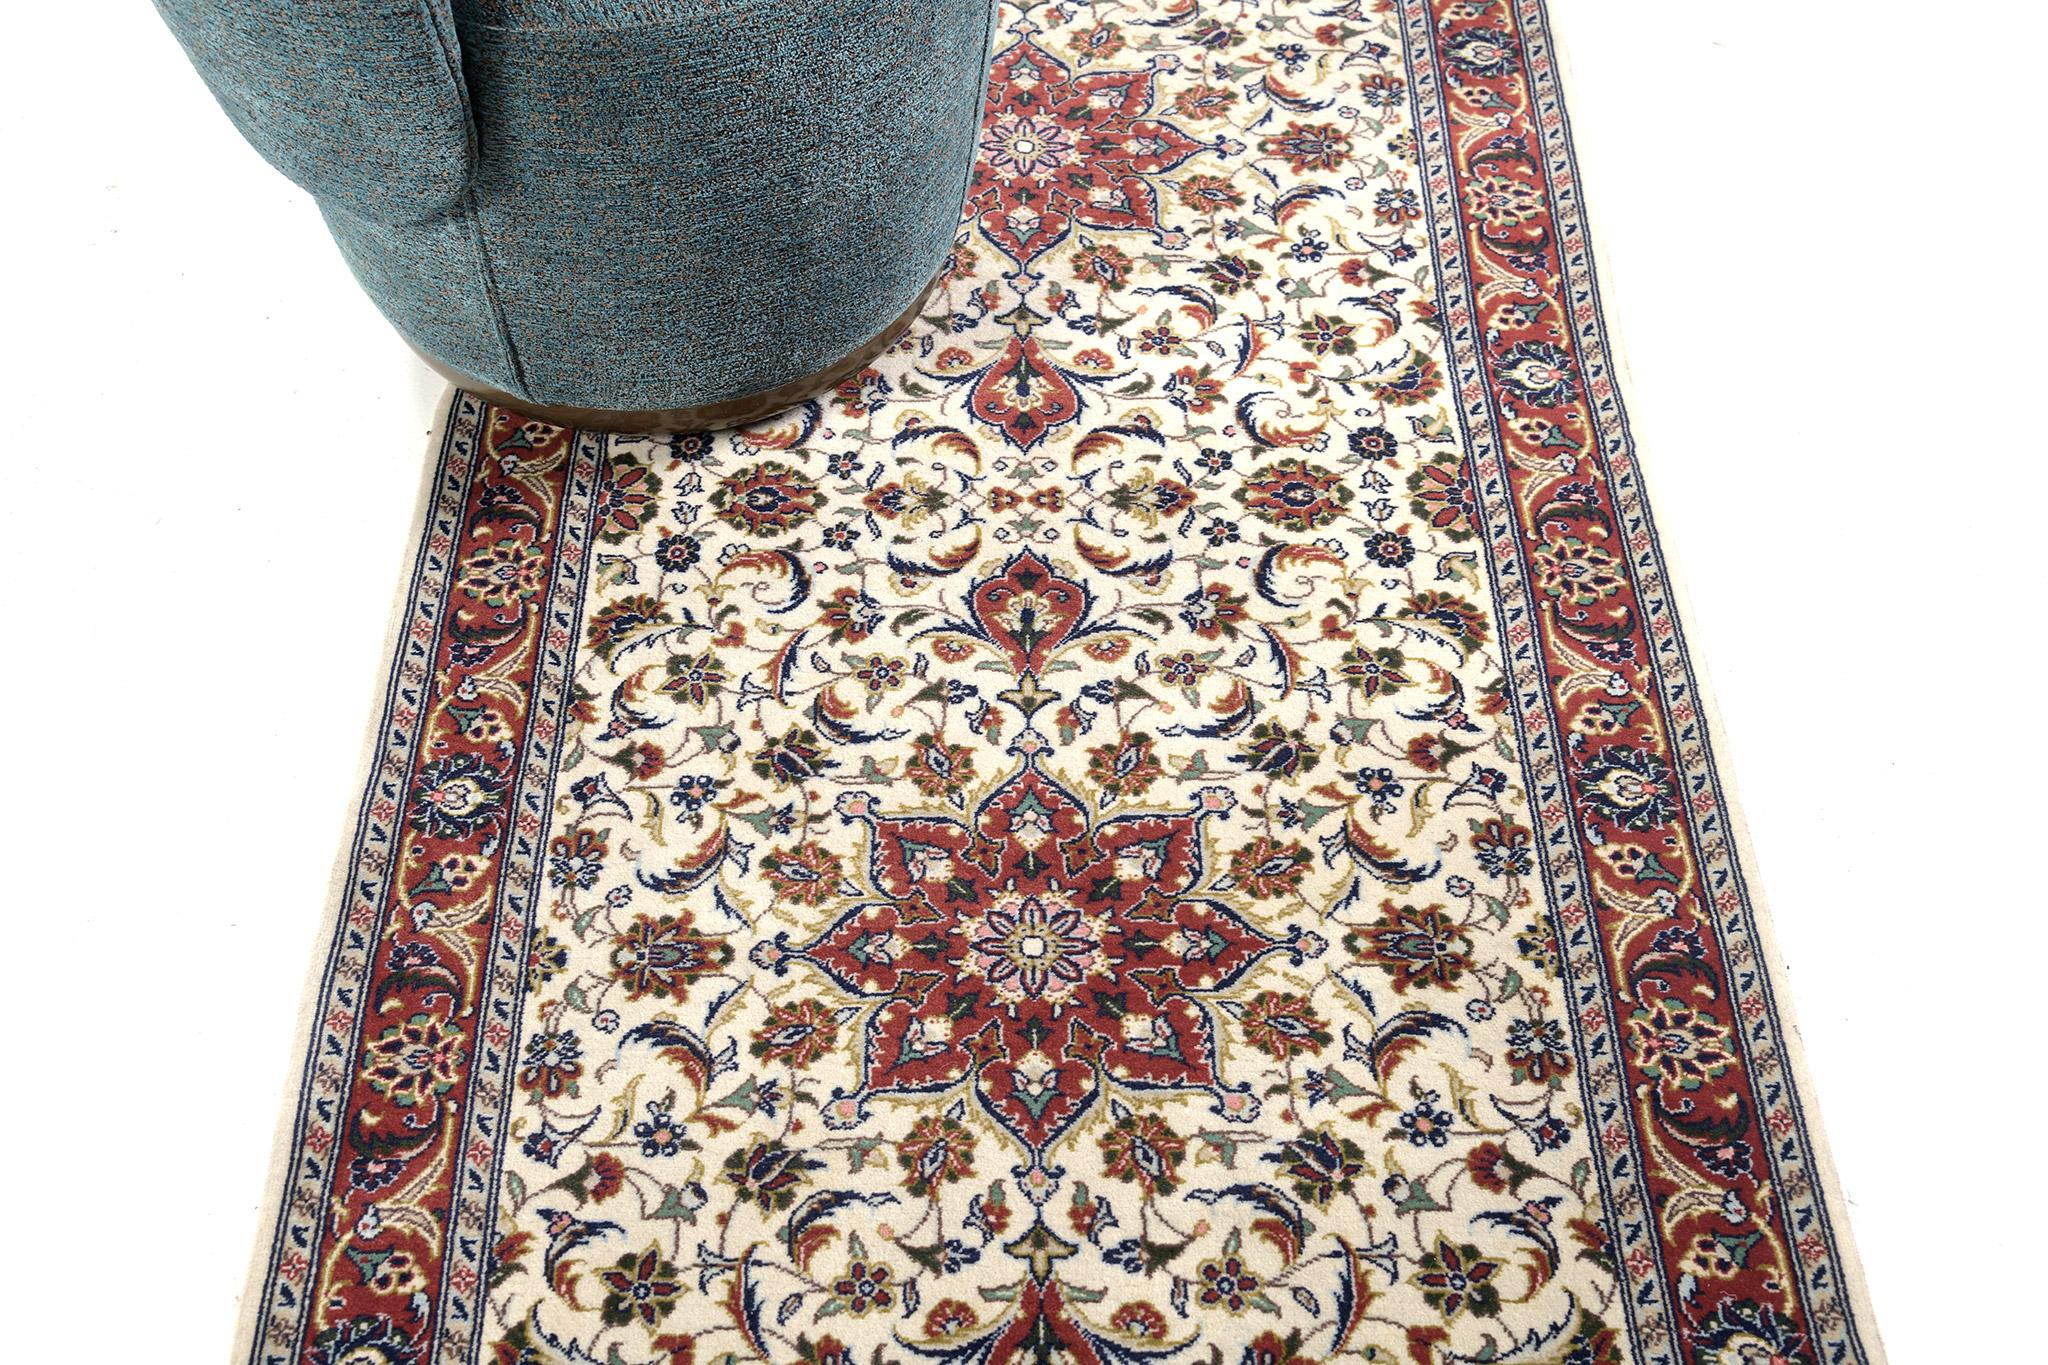 Ein prächtiger persischer Kashan-Teppich im Vintage-Stil, dessen Design auf jedem Quadratzentimeter eine atemberaubende Wirkung entfaltet. Dieser wunderbare Teppich präsentiert majestätisch eine Reihe von Rosettenmedaillons, die sich über ein